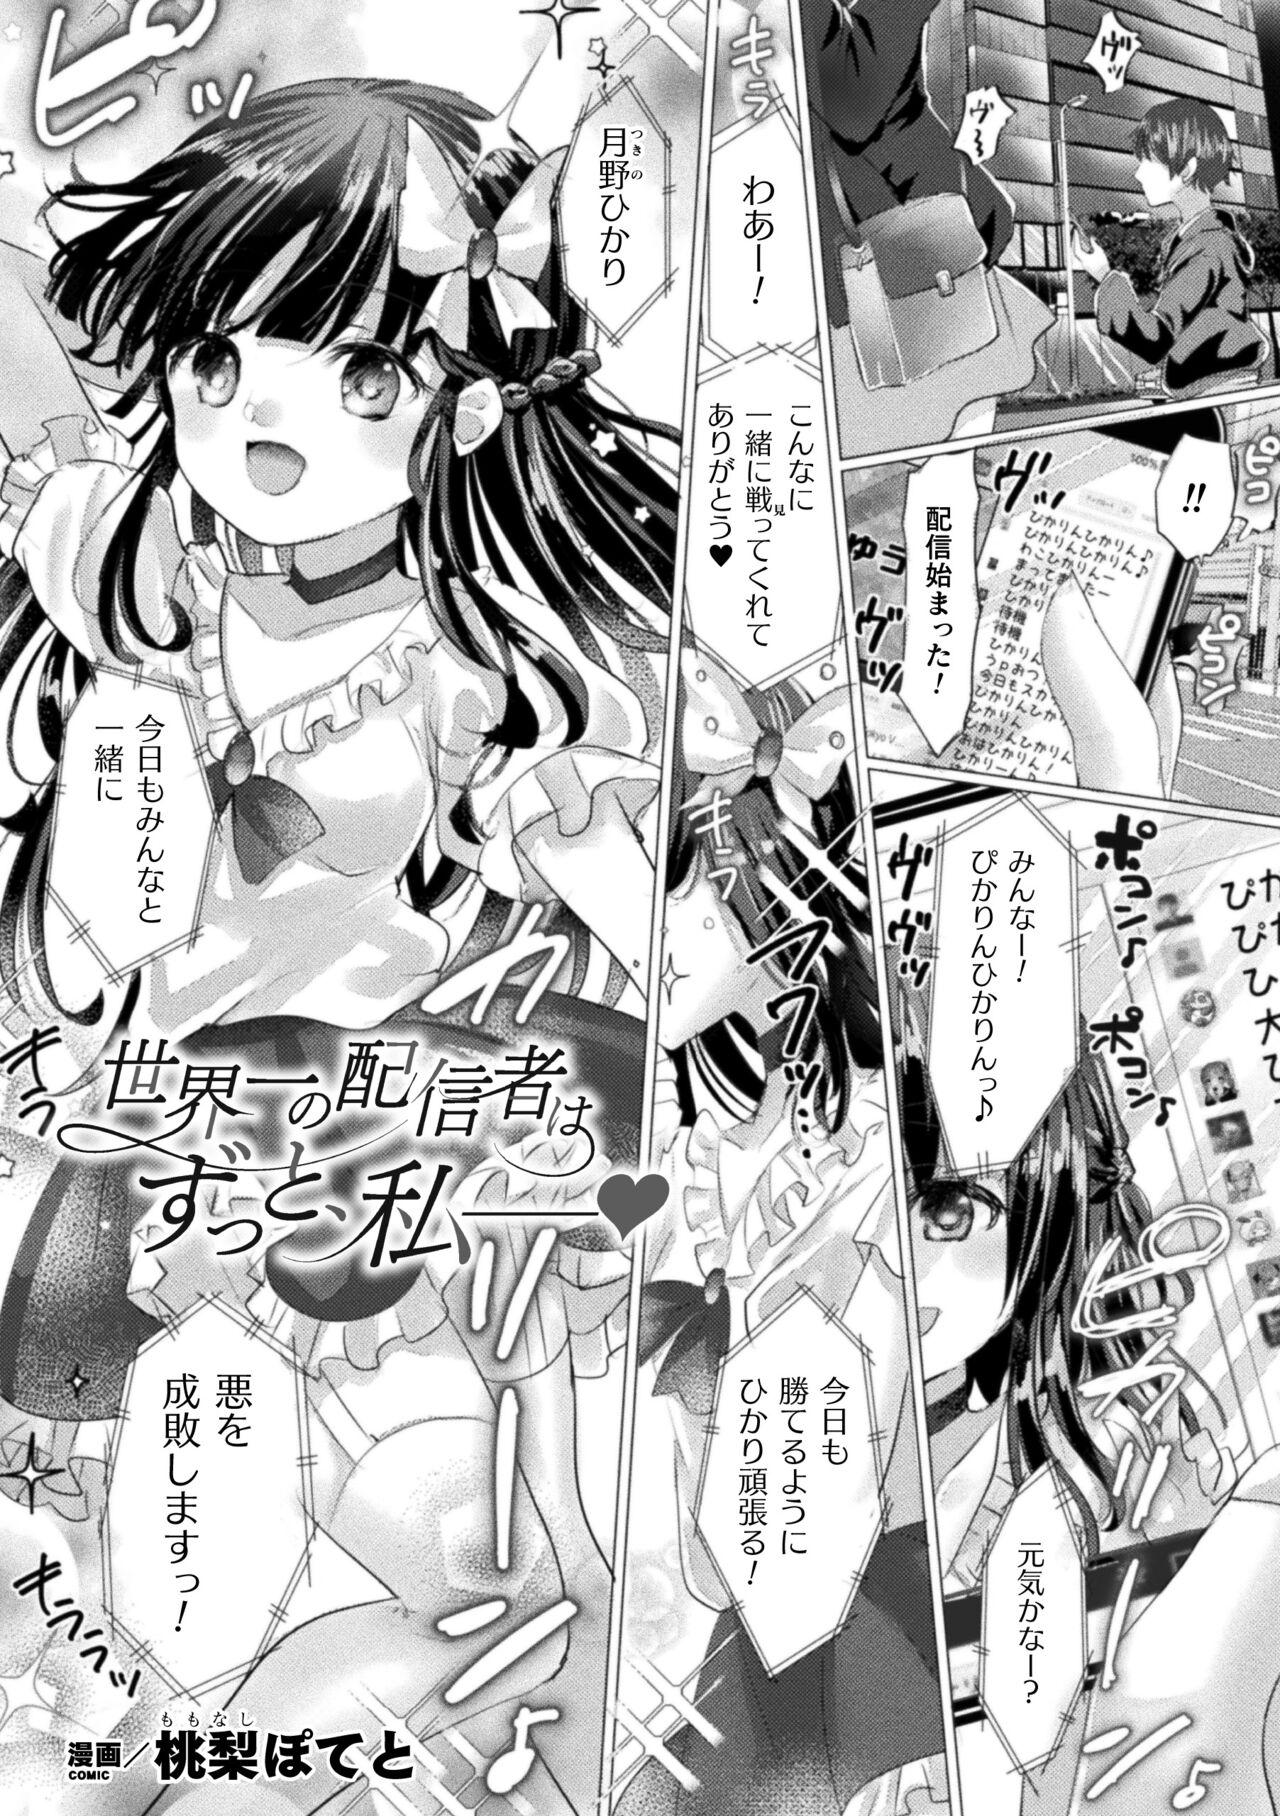 2D Comic Magazine Mesugaki Henshin Heroine Kikaikan Seisai Hijou no Wakarase Machine de Renzoku Loli Acme Vol. 3 42